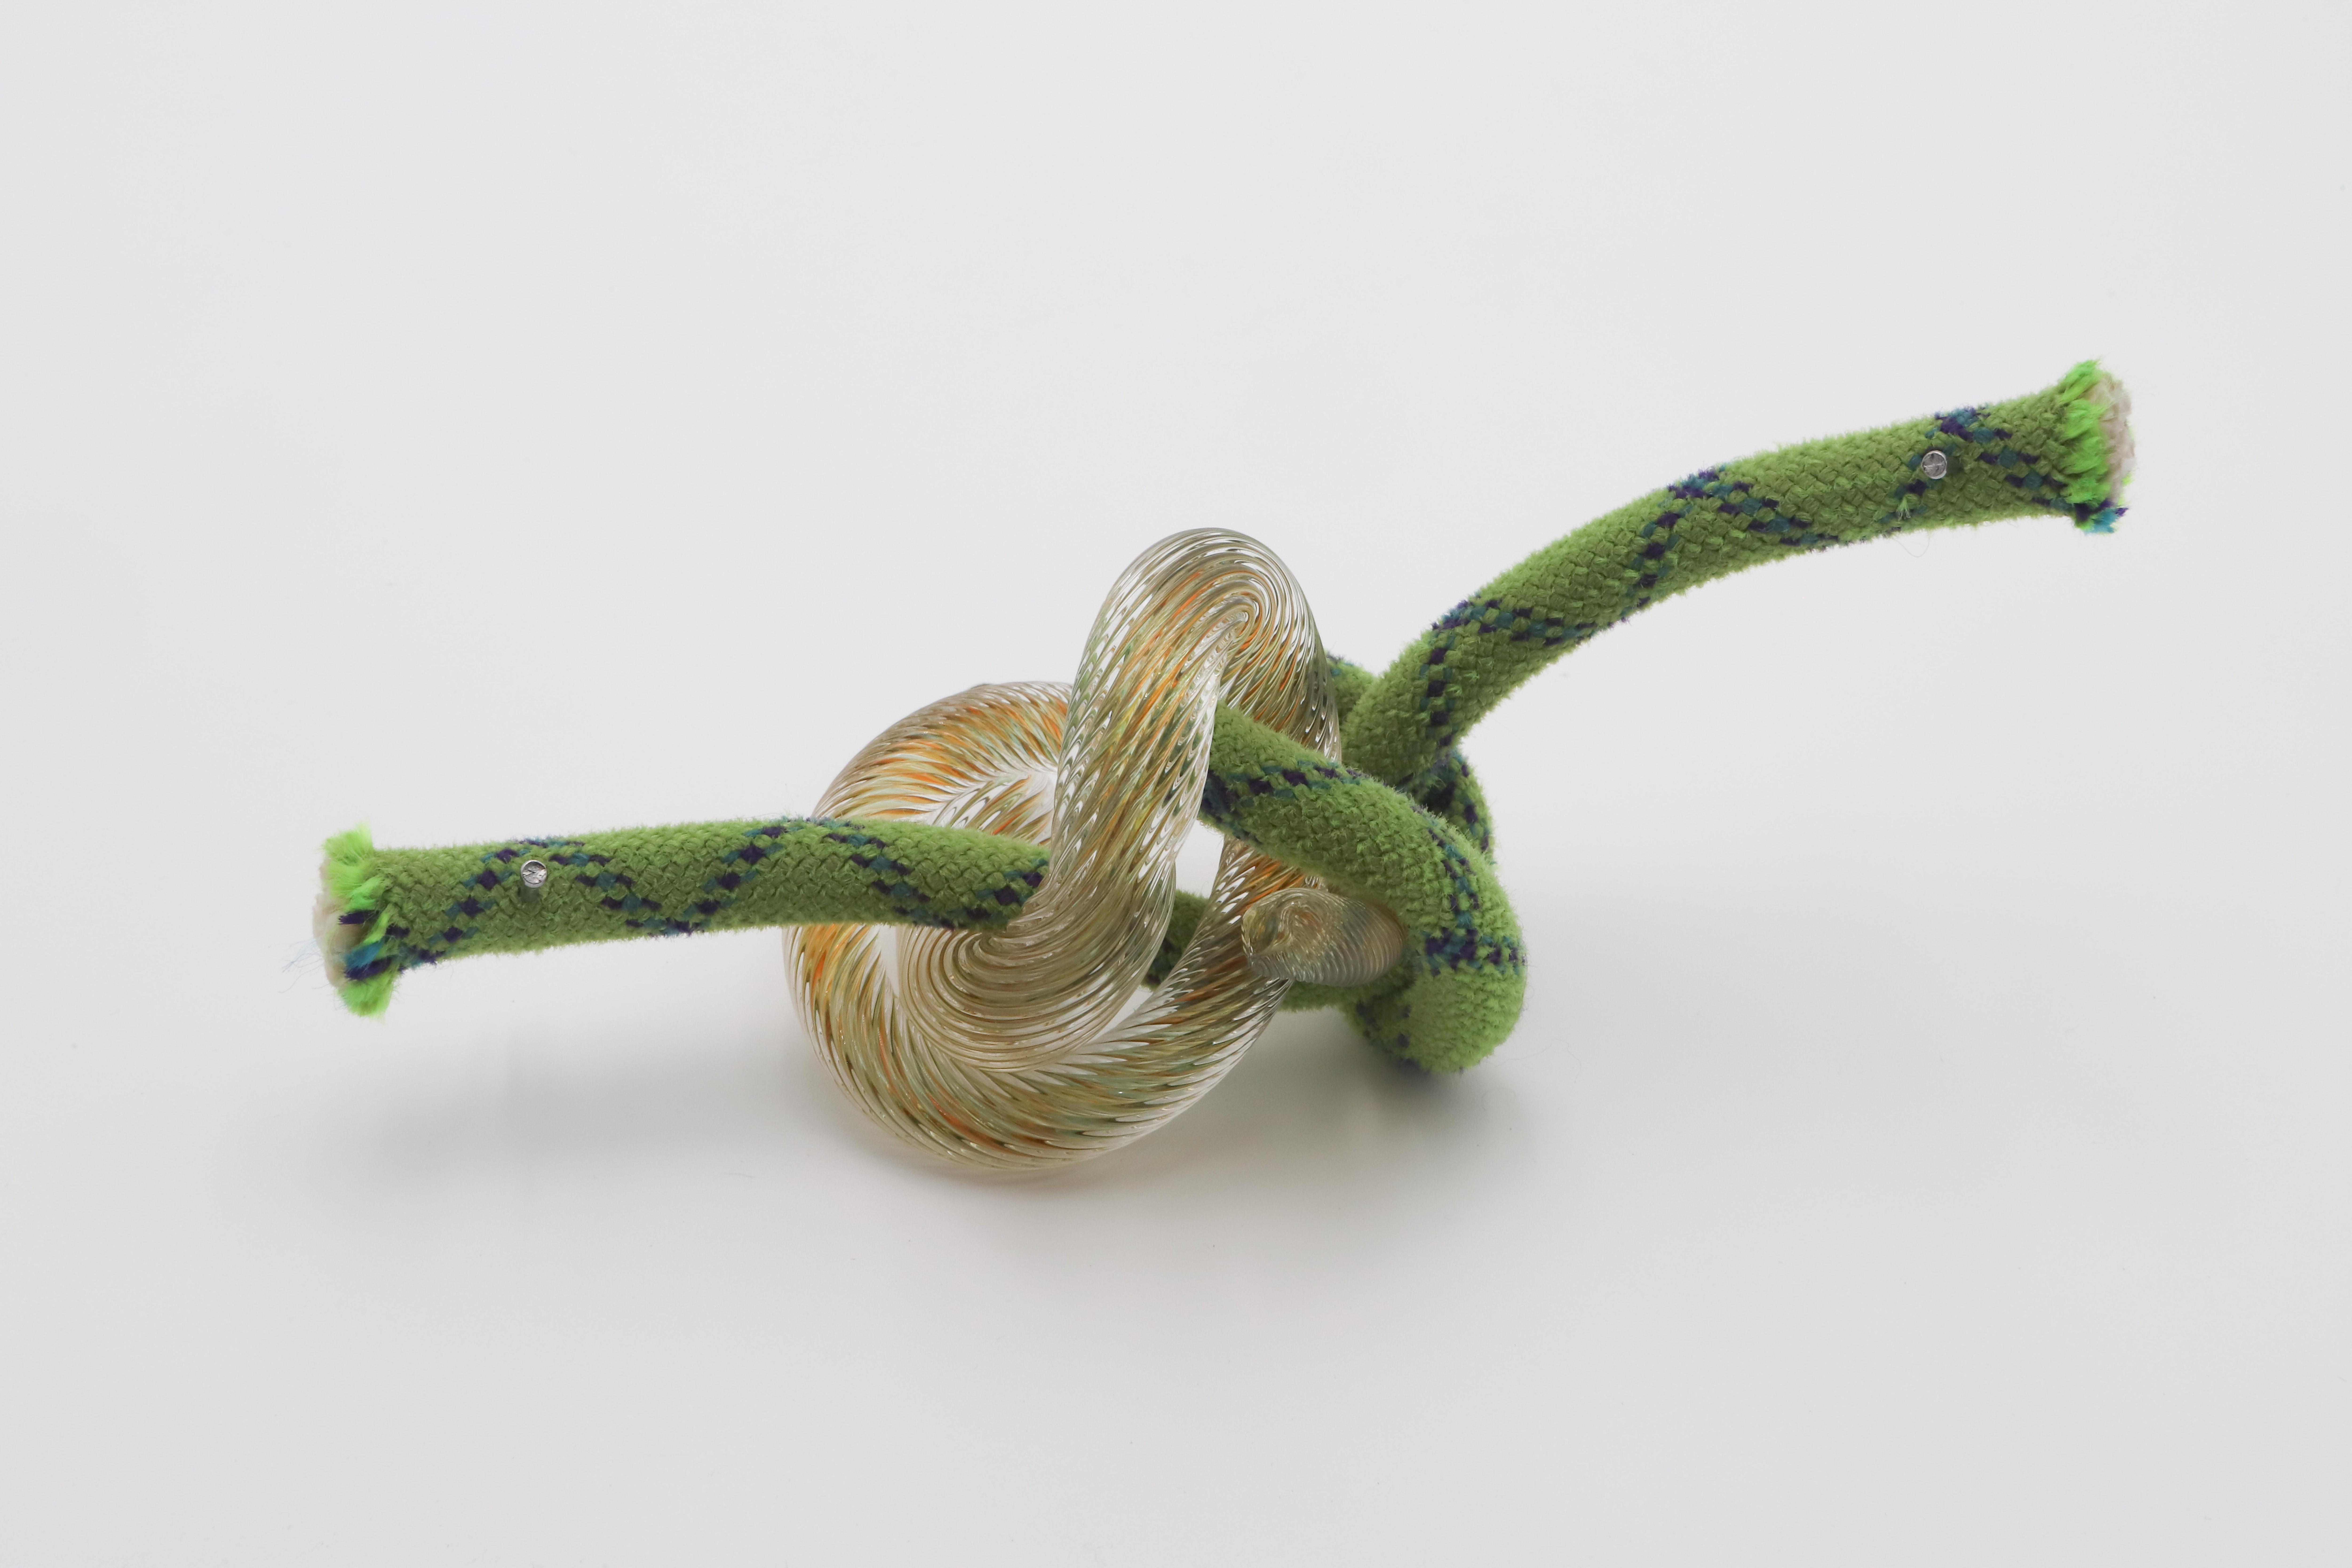 Knots (Tischplatte aus geblasenem Glas, gefundenes Objekt, kletternde Seilskulptur, Chihuly) – Sculpture von Robert Burch